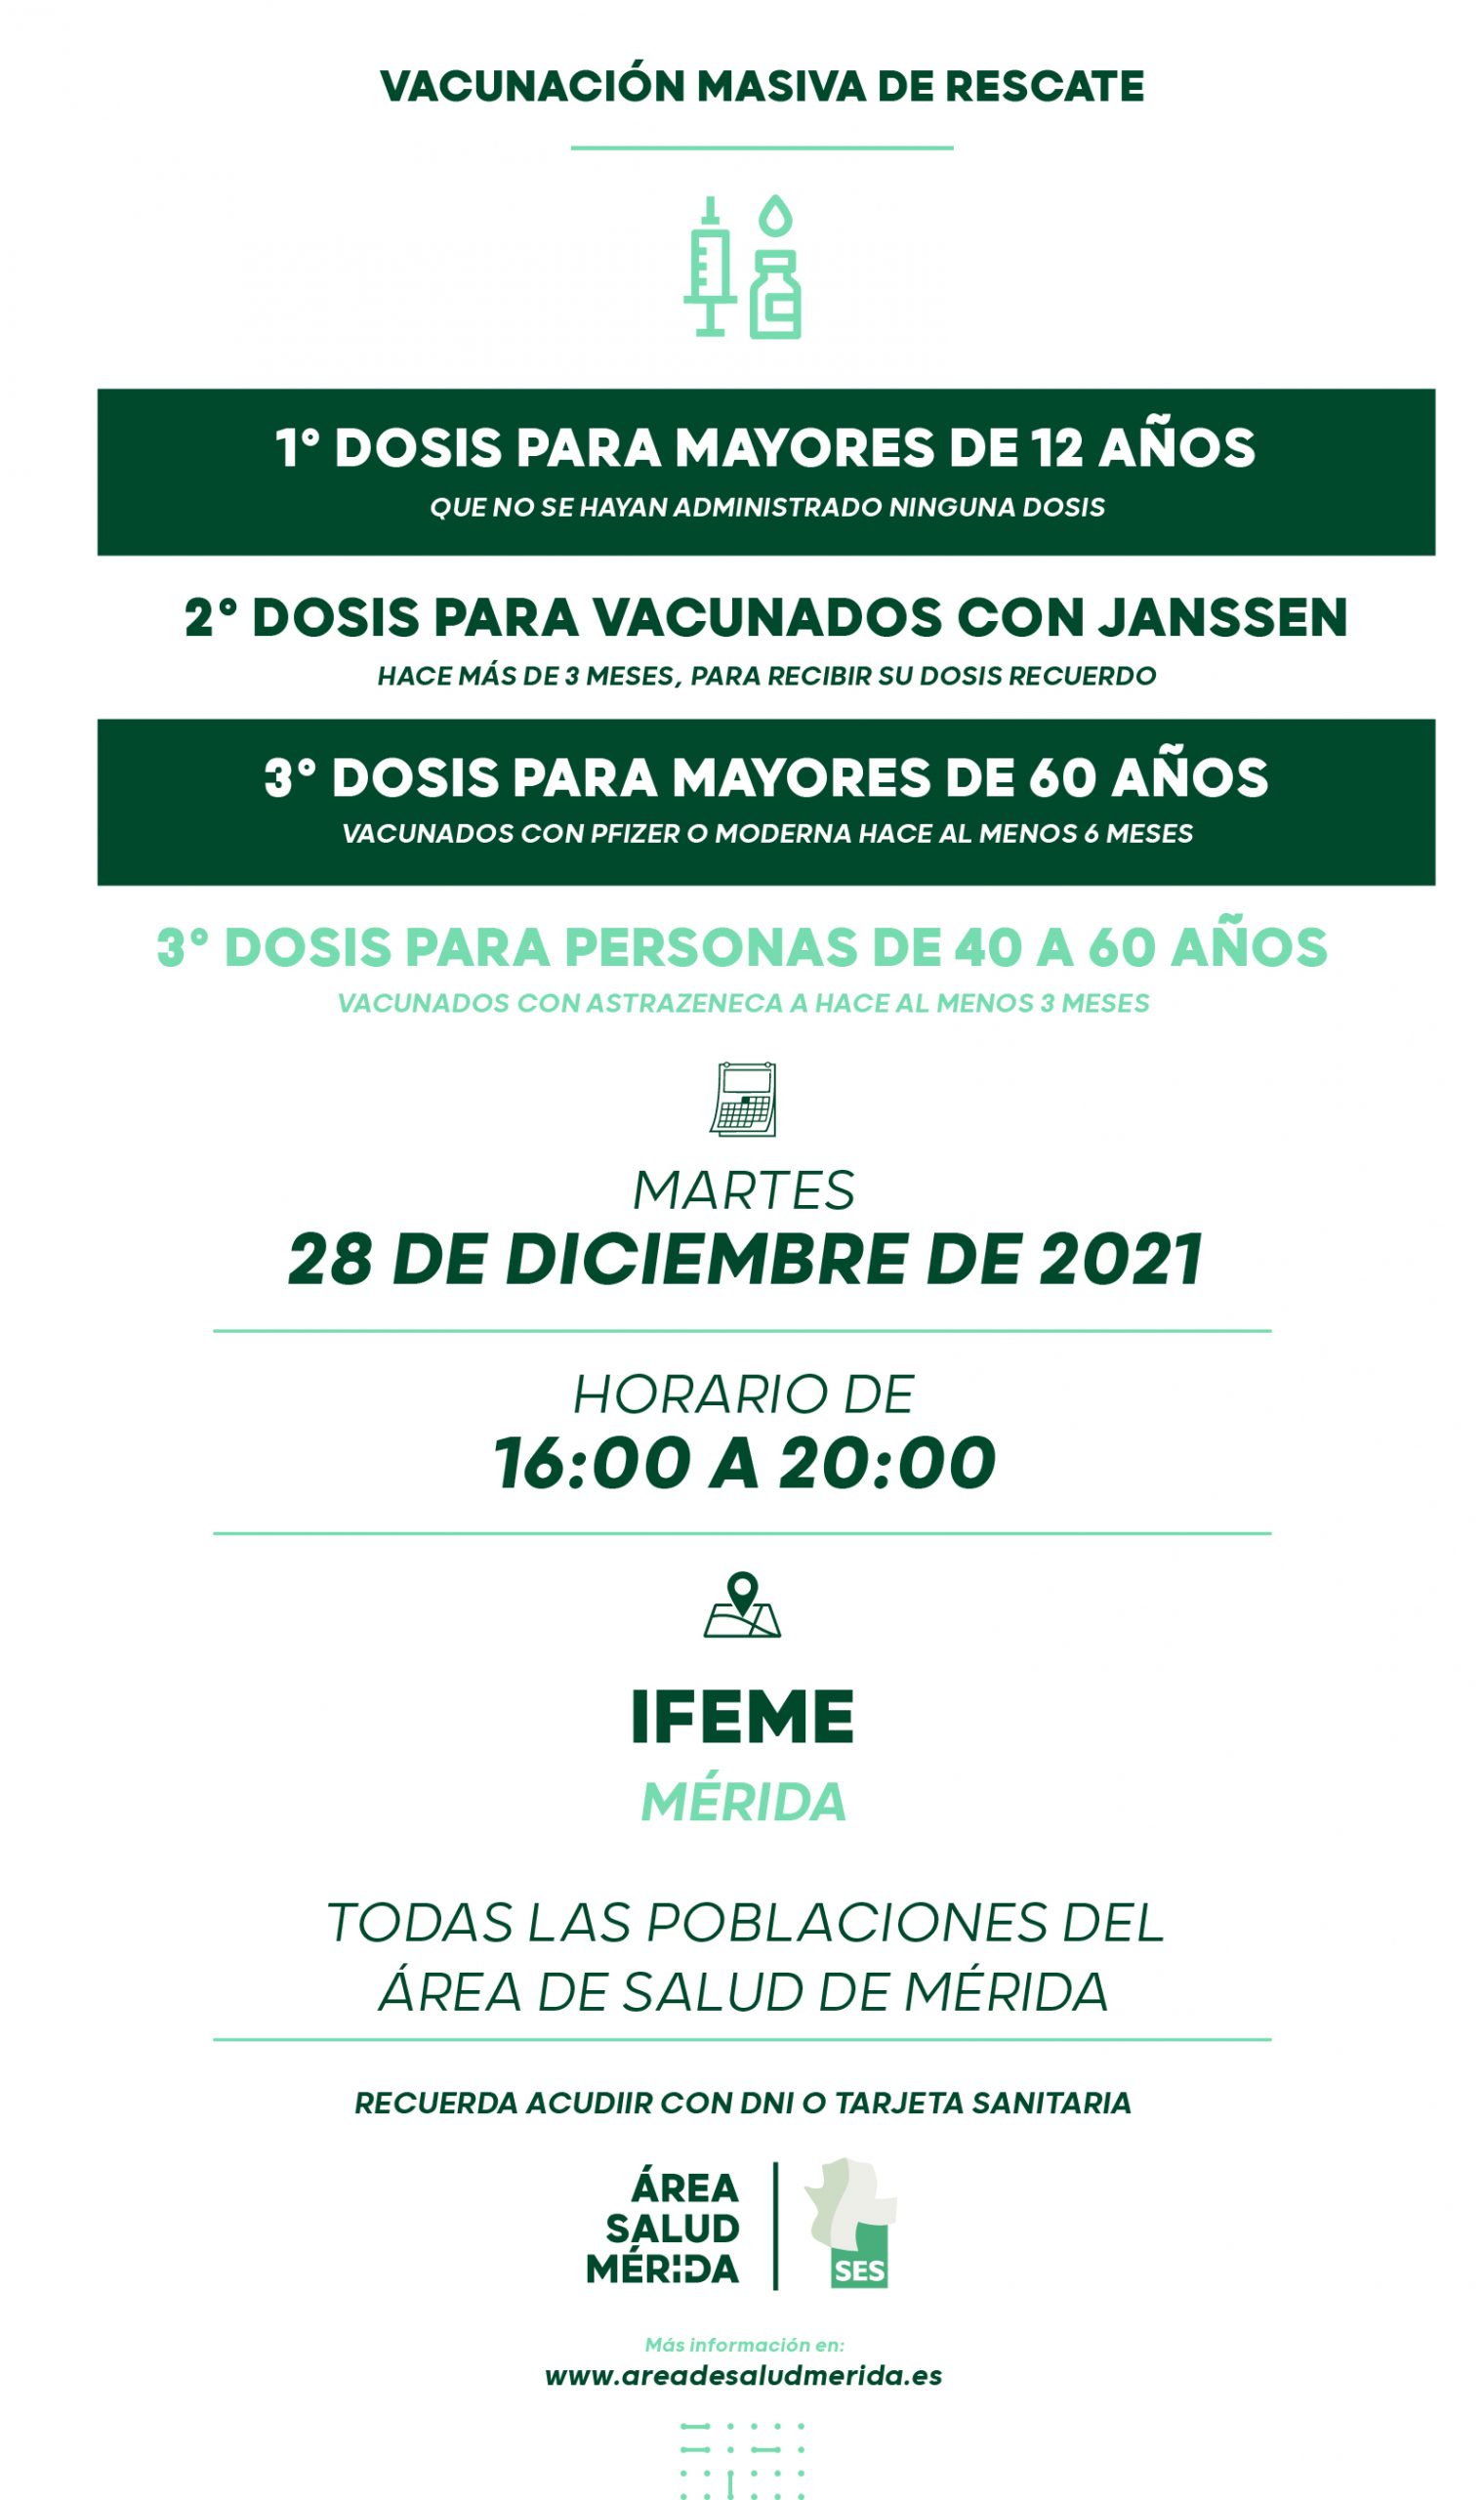 Llamamiento de rescate, martes 28 de Diciembre, todas las poblaciones del Área de Salud de Mérida.